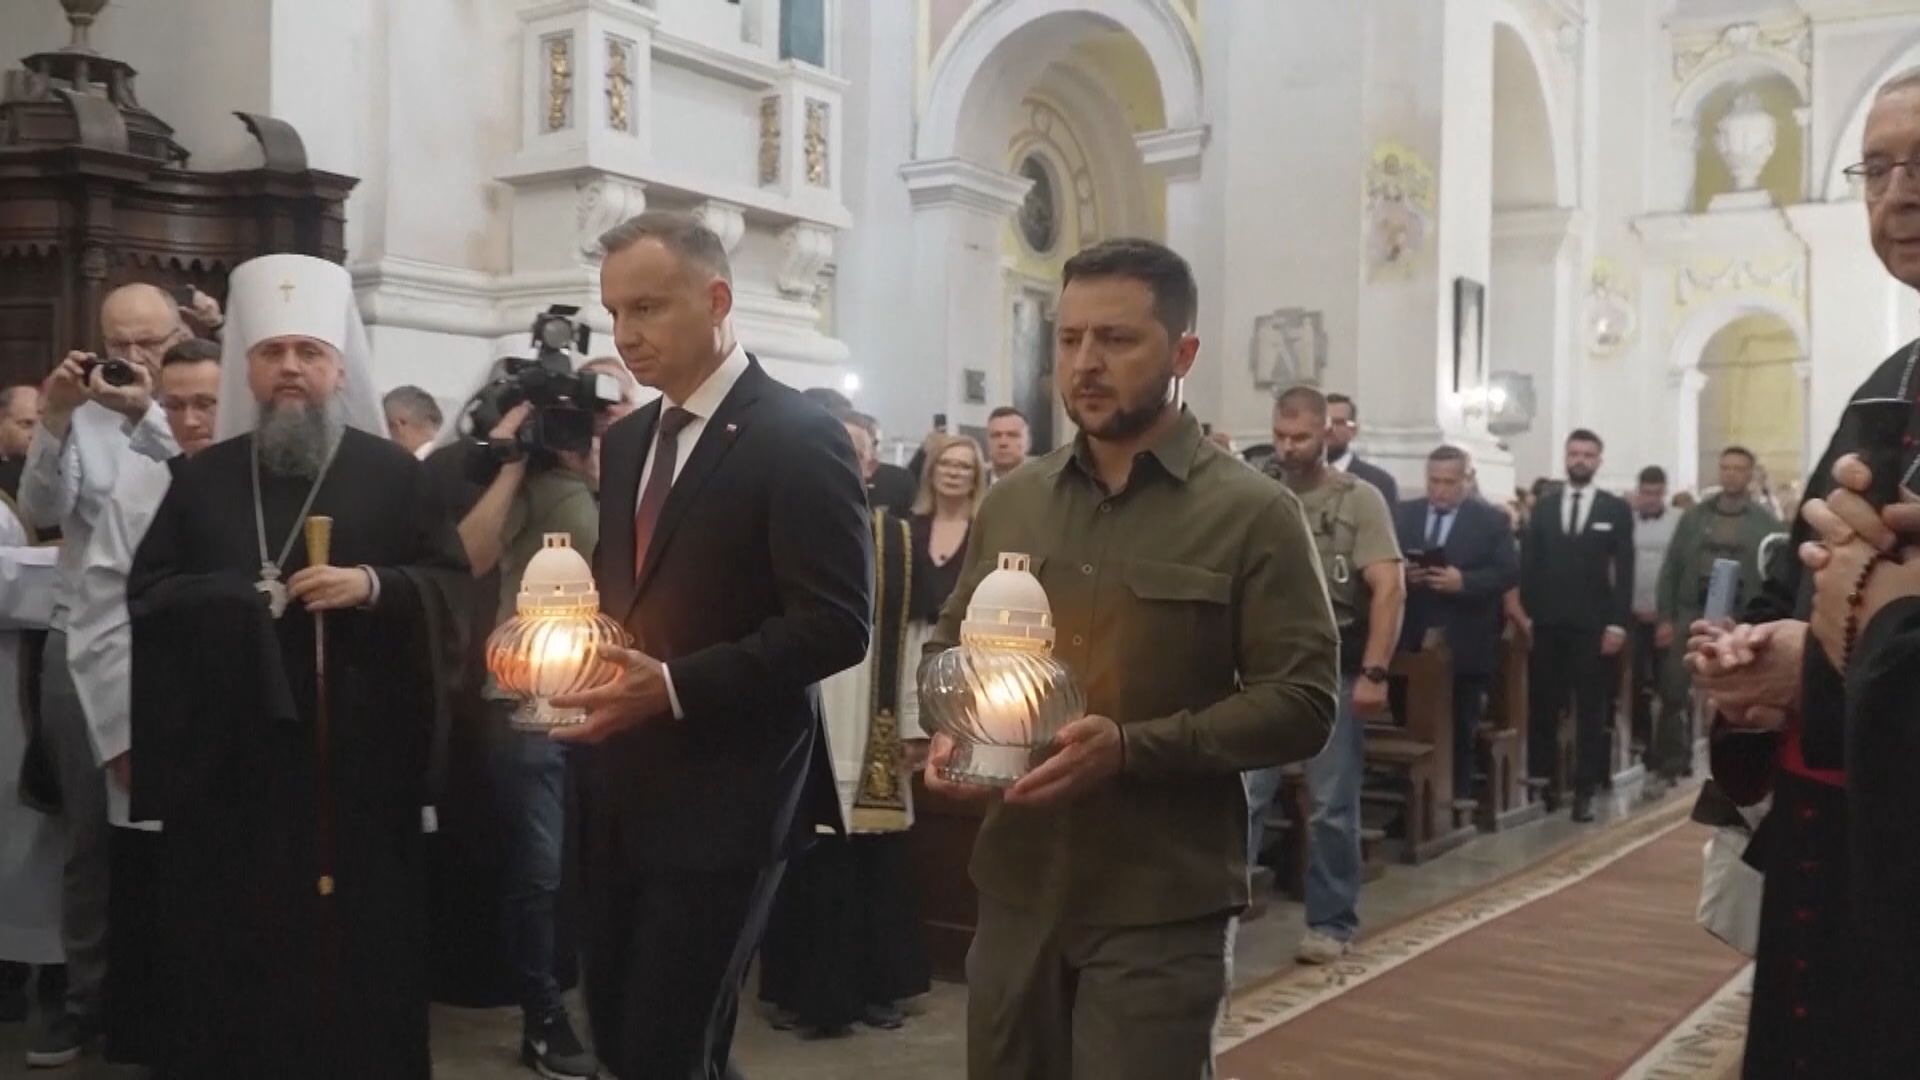 烏克蘭波蘭領袖悼念二戰屠殺遇難者 表示會保持團結